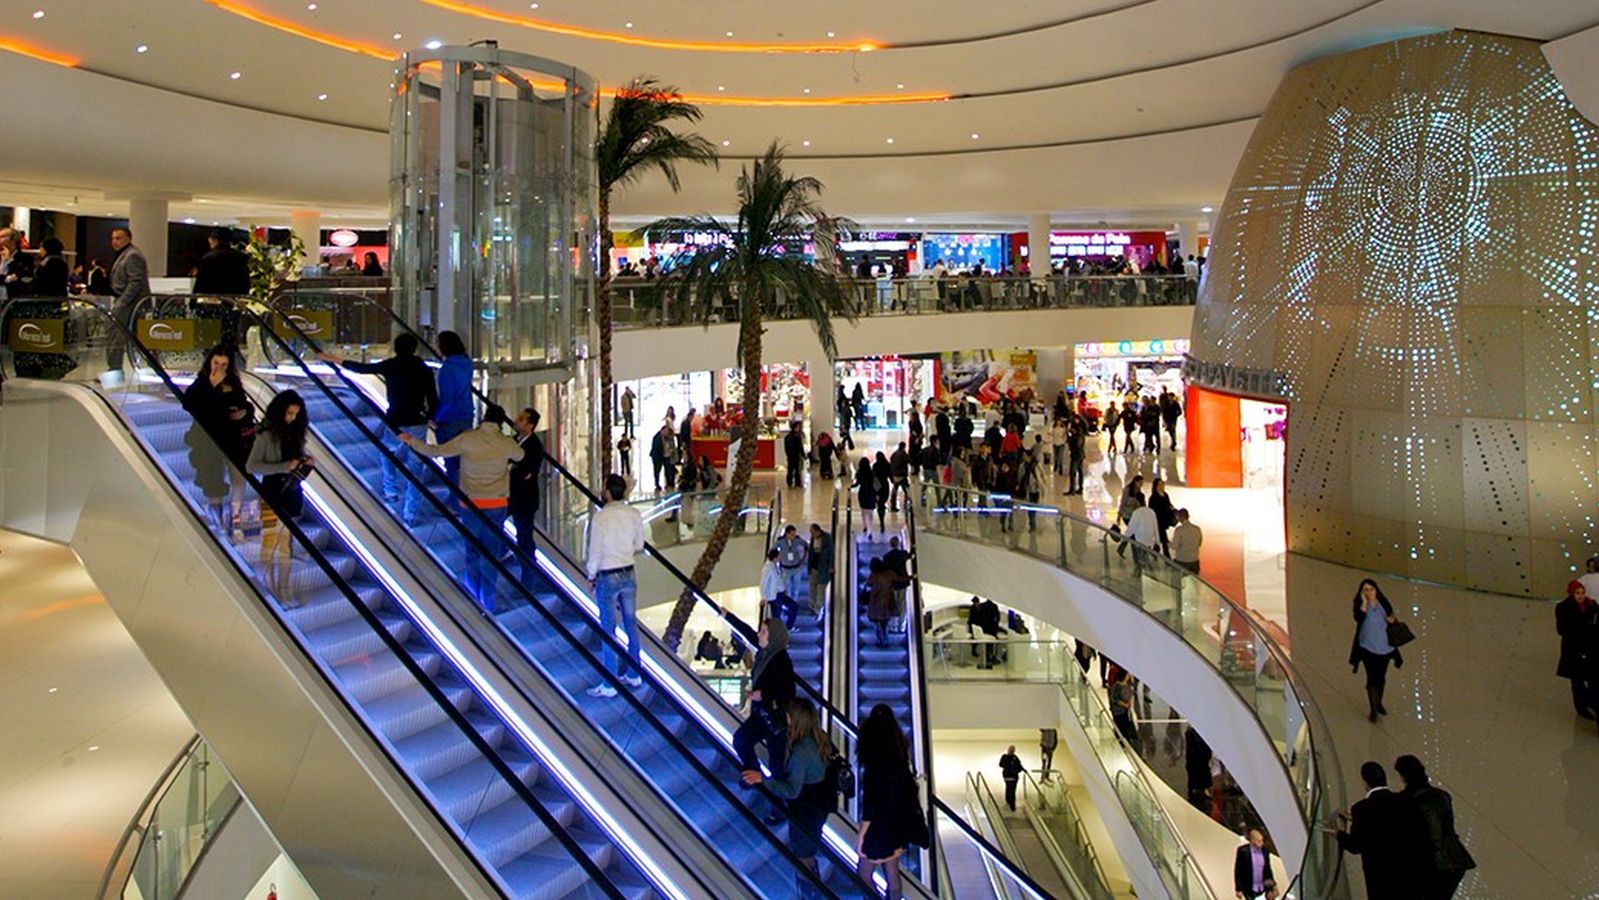 Shoppen geht auch - wie hier in einer Mall in Casablanca. © visitmorocco.com